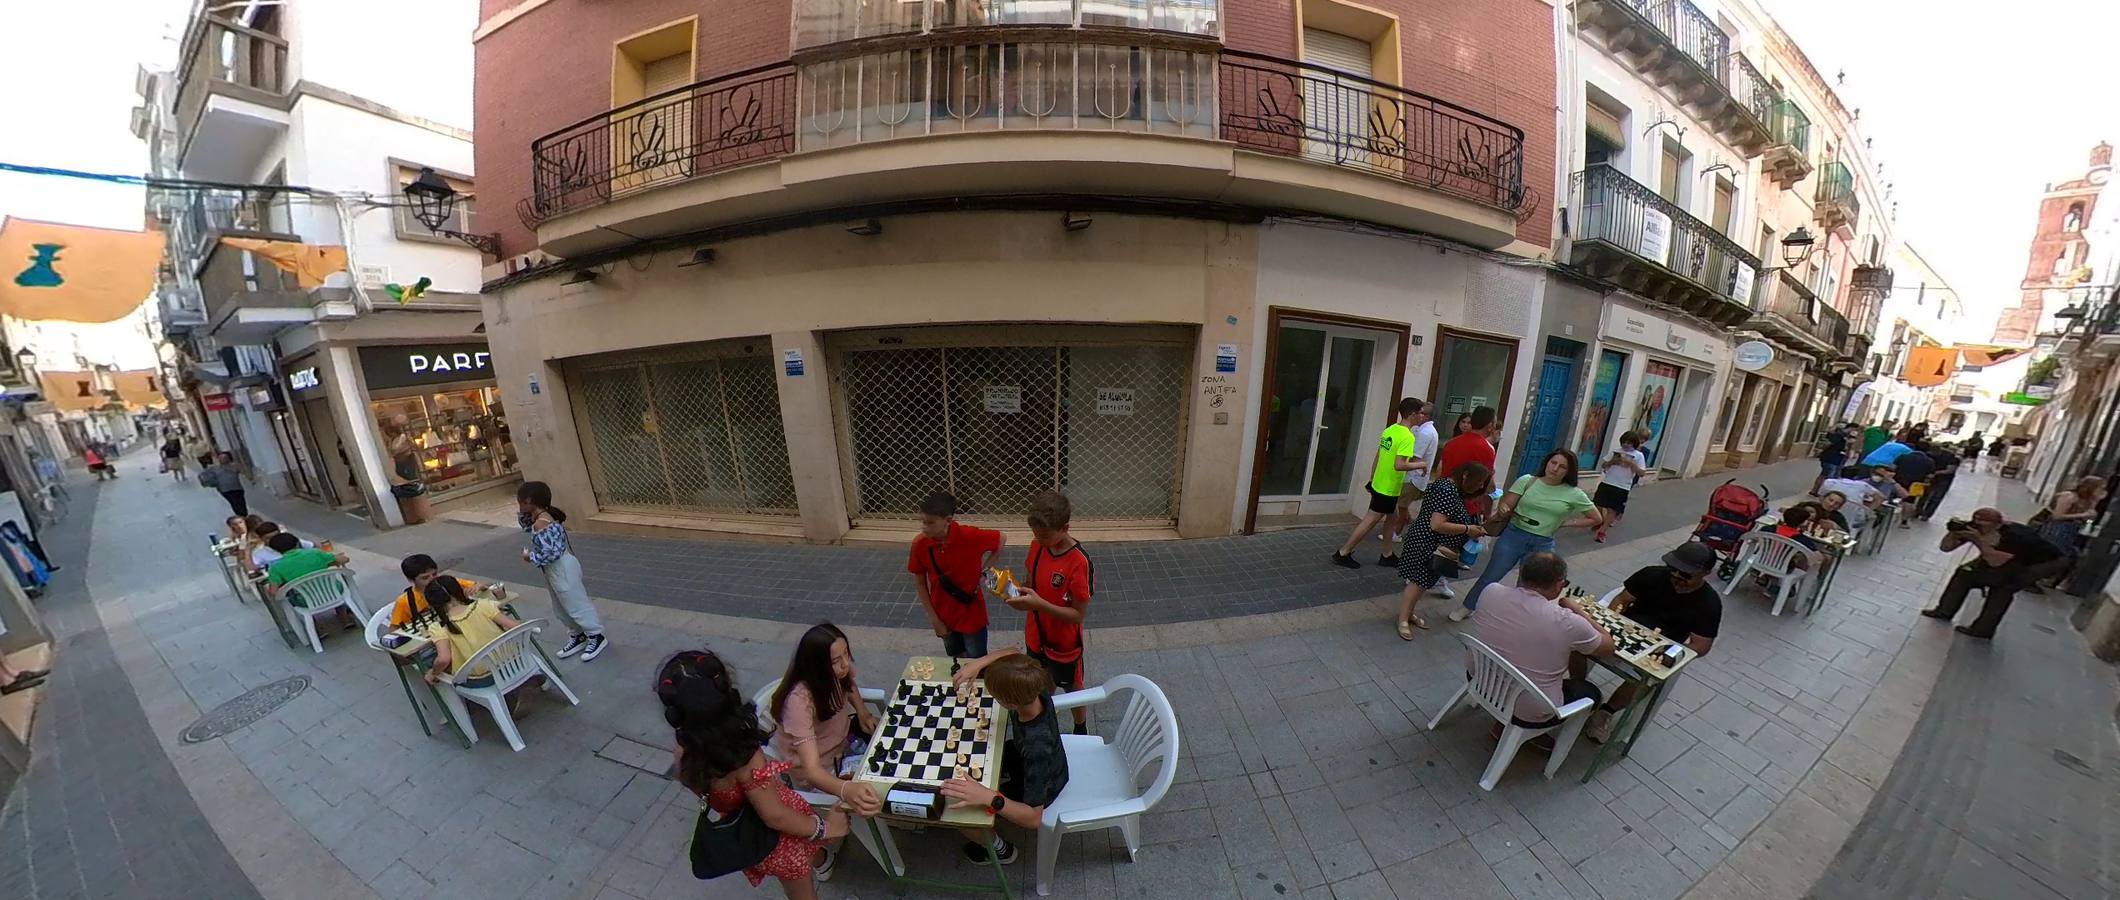 Exhibición de ajedrez en la calle Sevilla 